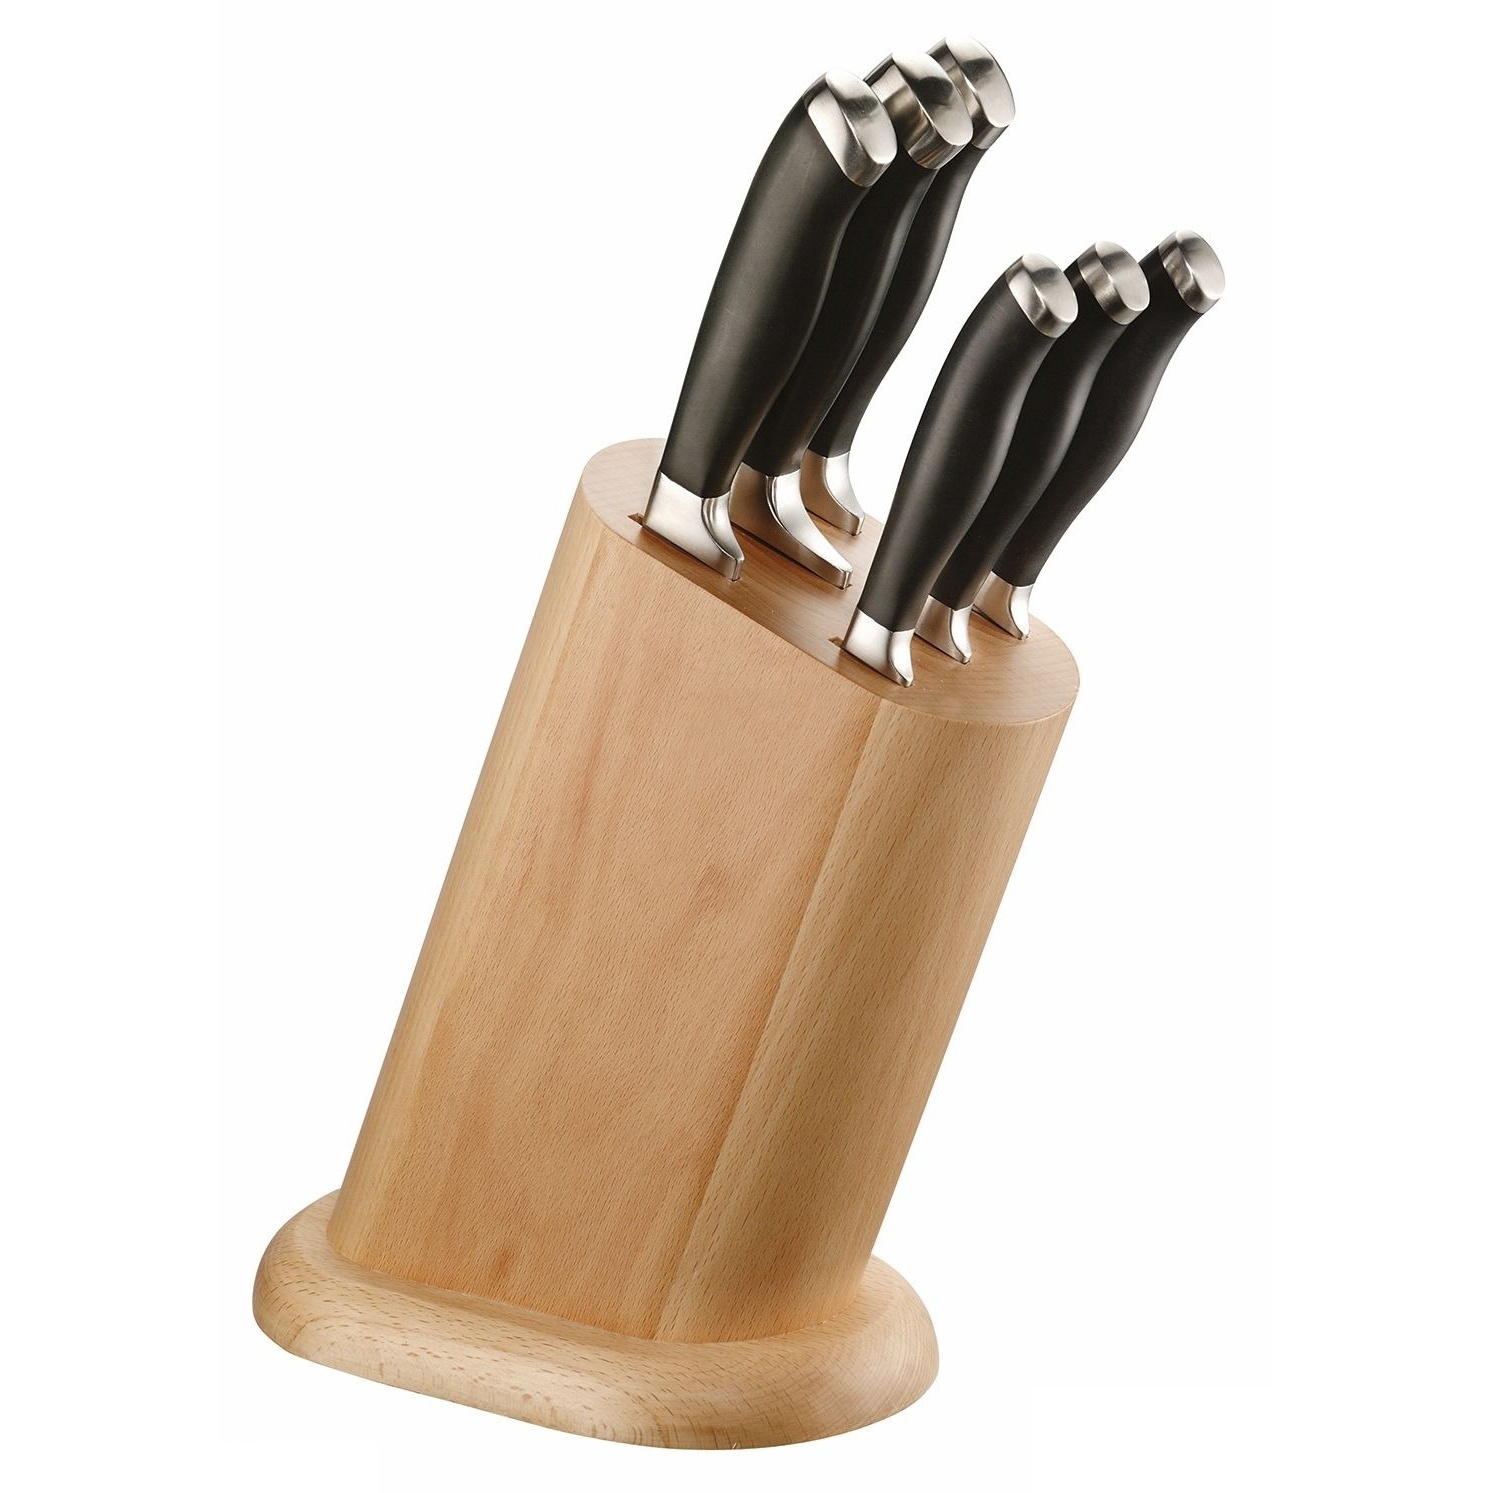 Набор ножей Pintinox 6 шт в деревянной подставке набор кухонный на подставке